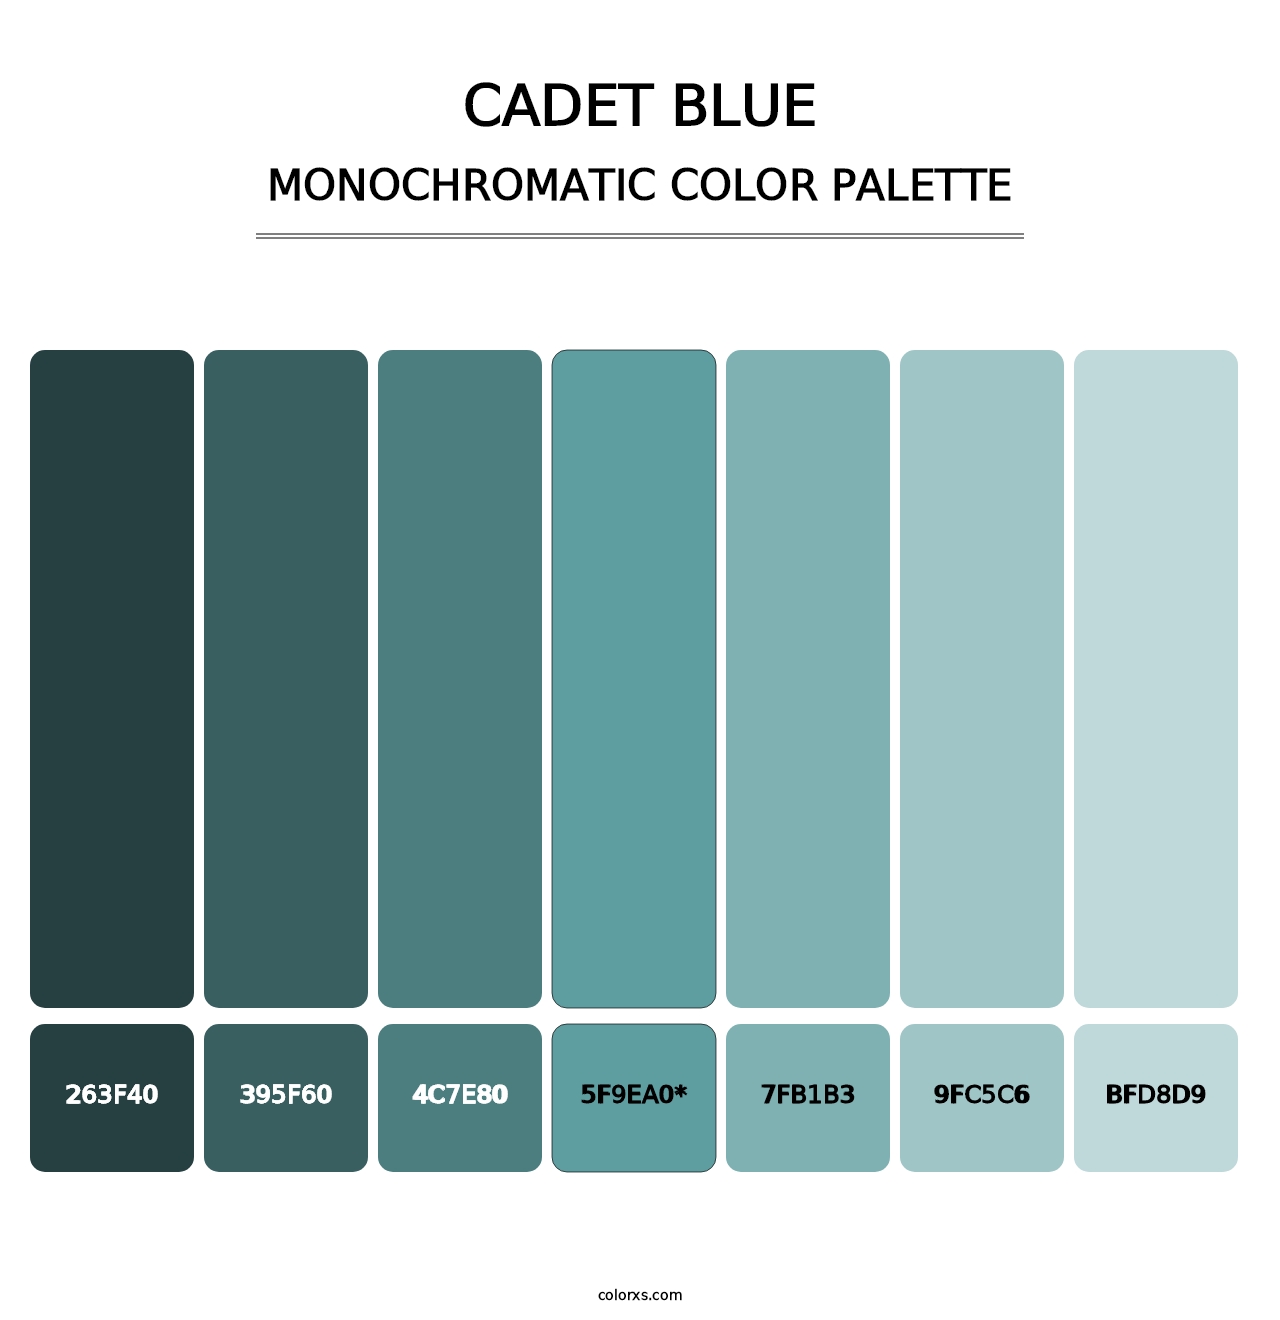 Cadet Blue - Monochromatic Color Palette